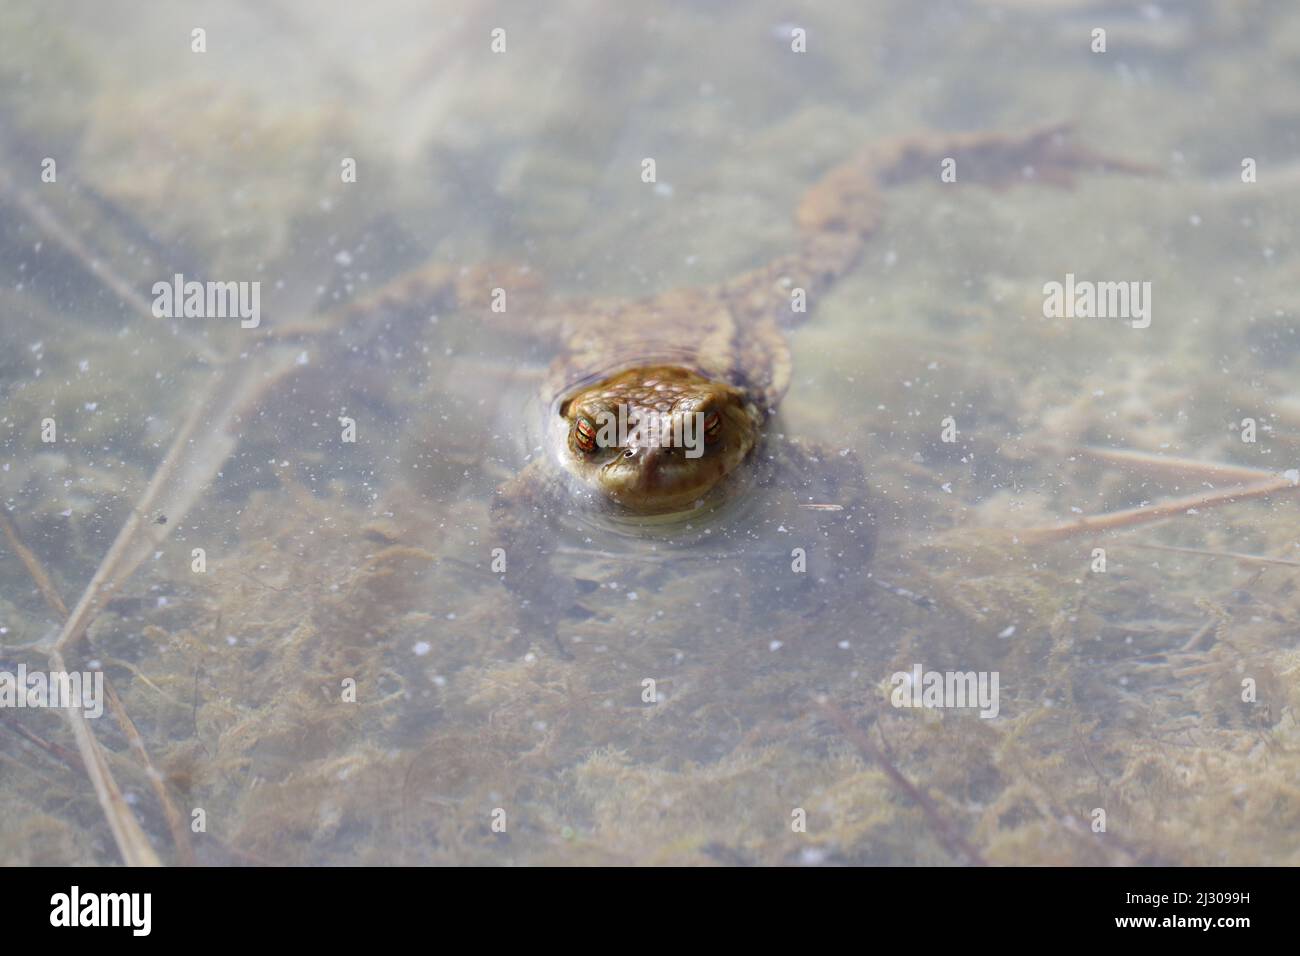 Toad comune sedette in un laghetto alla ricerca di un compagno durante la stagione primaverile di accoppiamento. Contea di Durham, Inghilterra, Regno Unito. Foto Stock